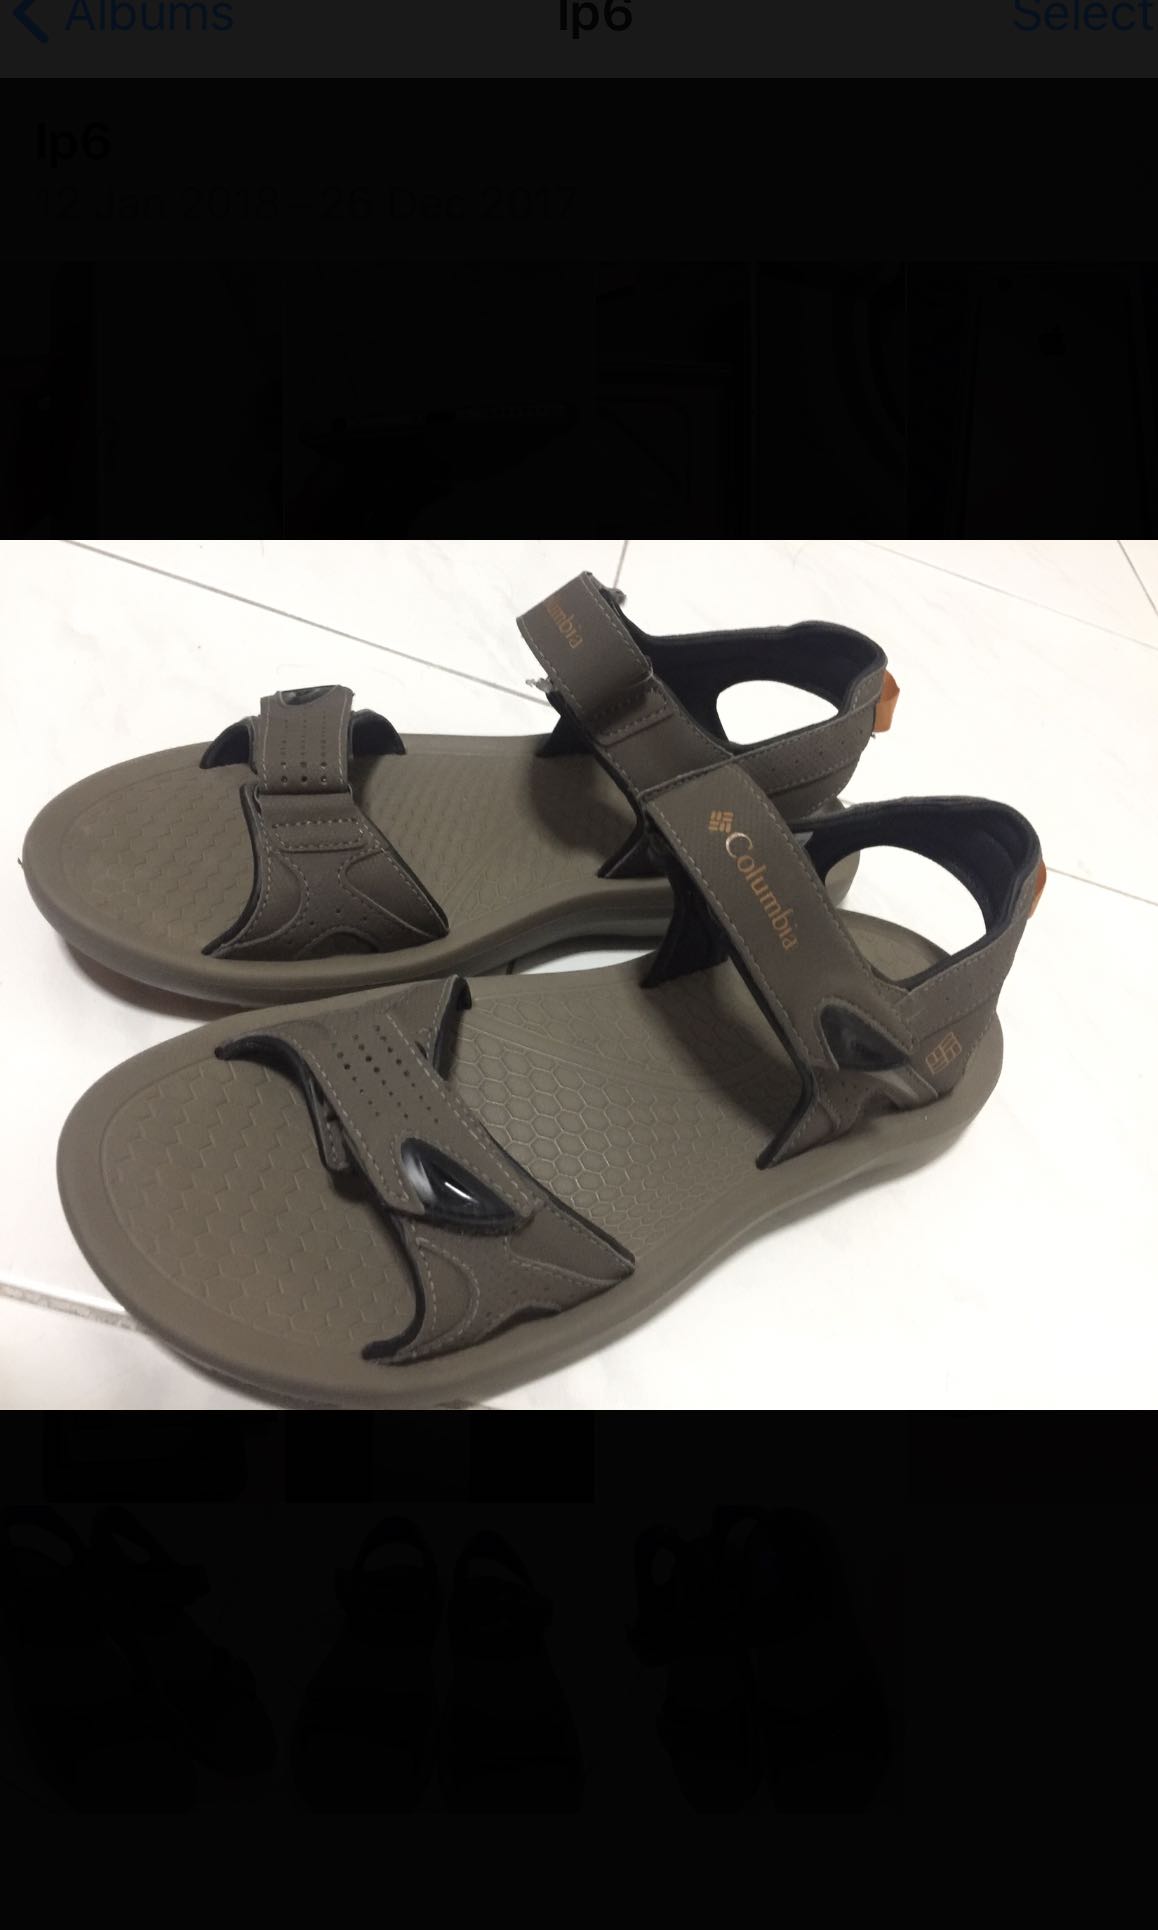 Columbia Omni-grip sandals, Men's 